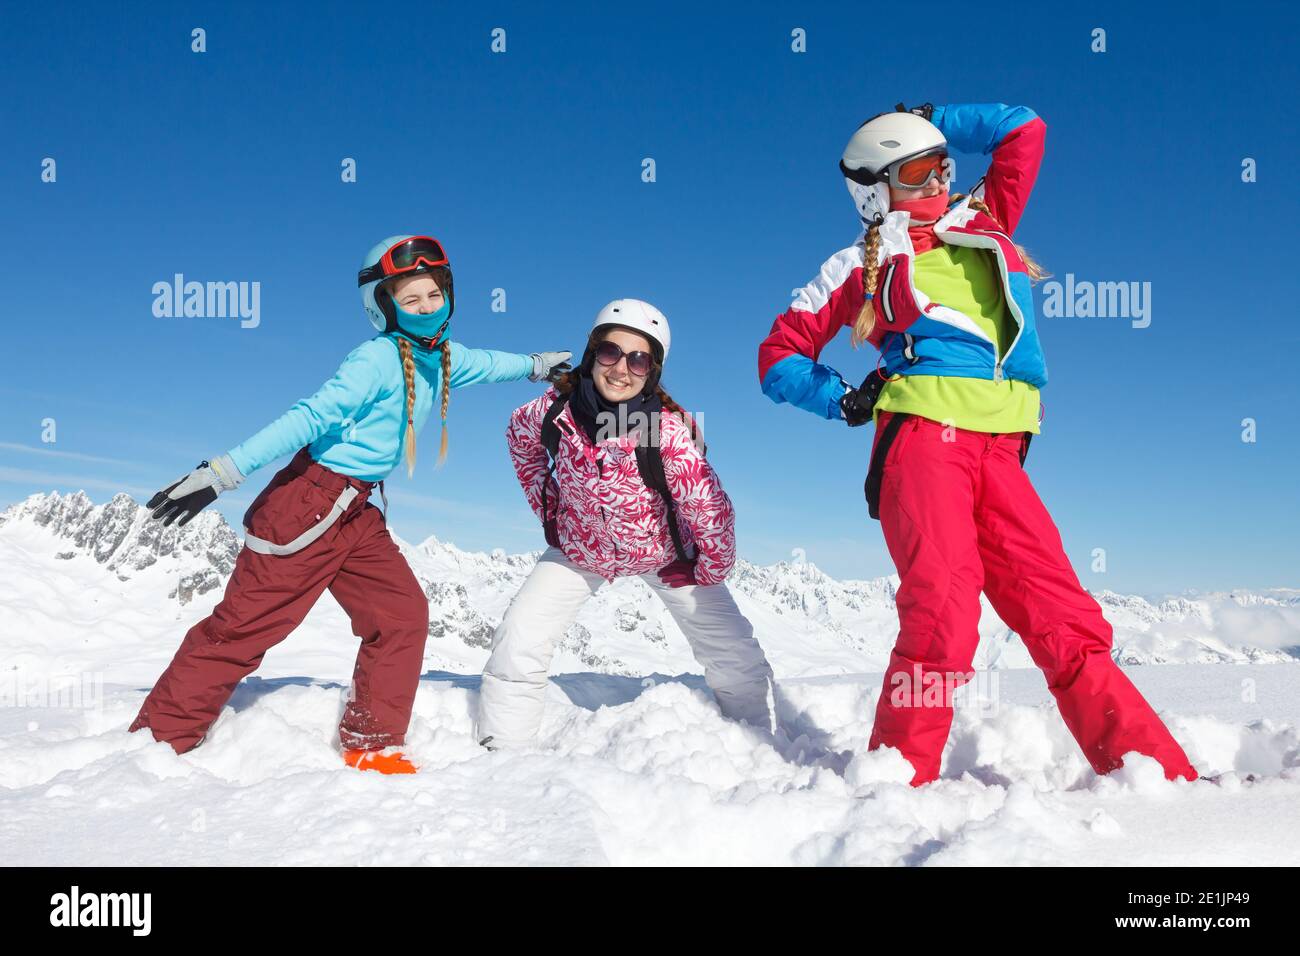 Aktivitäten im Schnee von drei jungen Mädchen im Winter Urlaub in den französischen Alpen im Schnee mit bunt Jacke und Skihelm Stockfoto